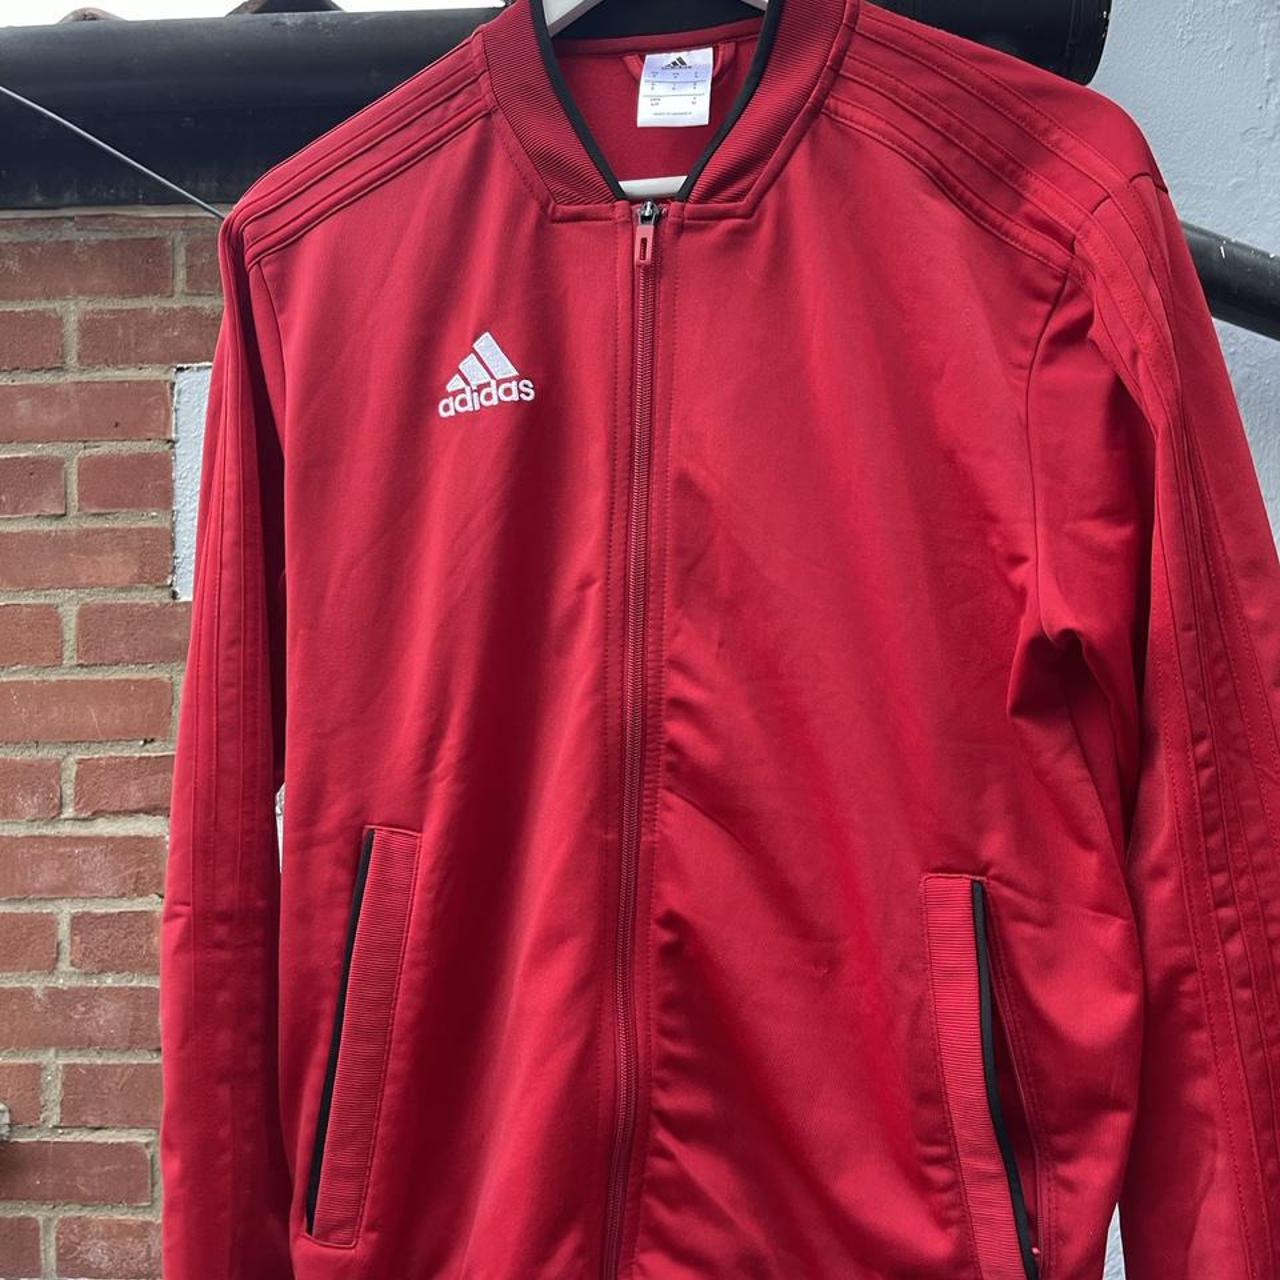 Product Image 3 - Adidas track jacket 





#adidas#trackjacket#red#sports